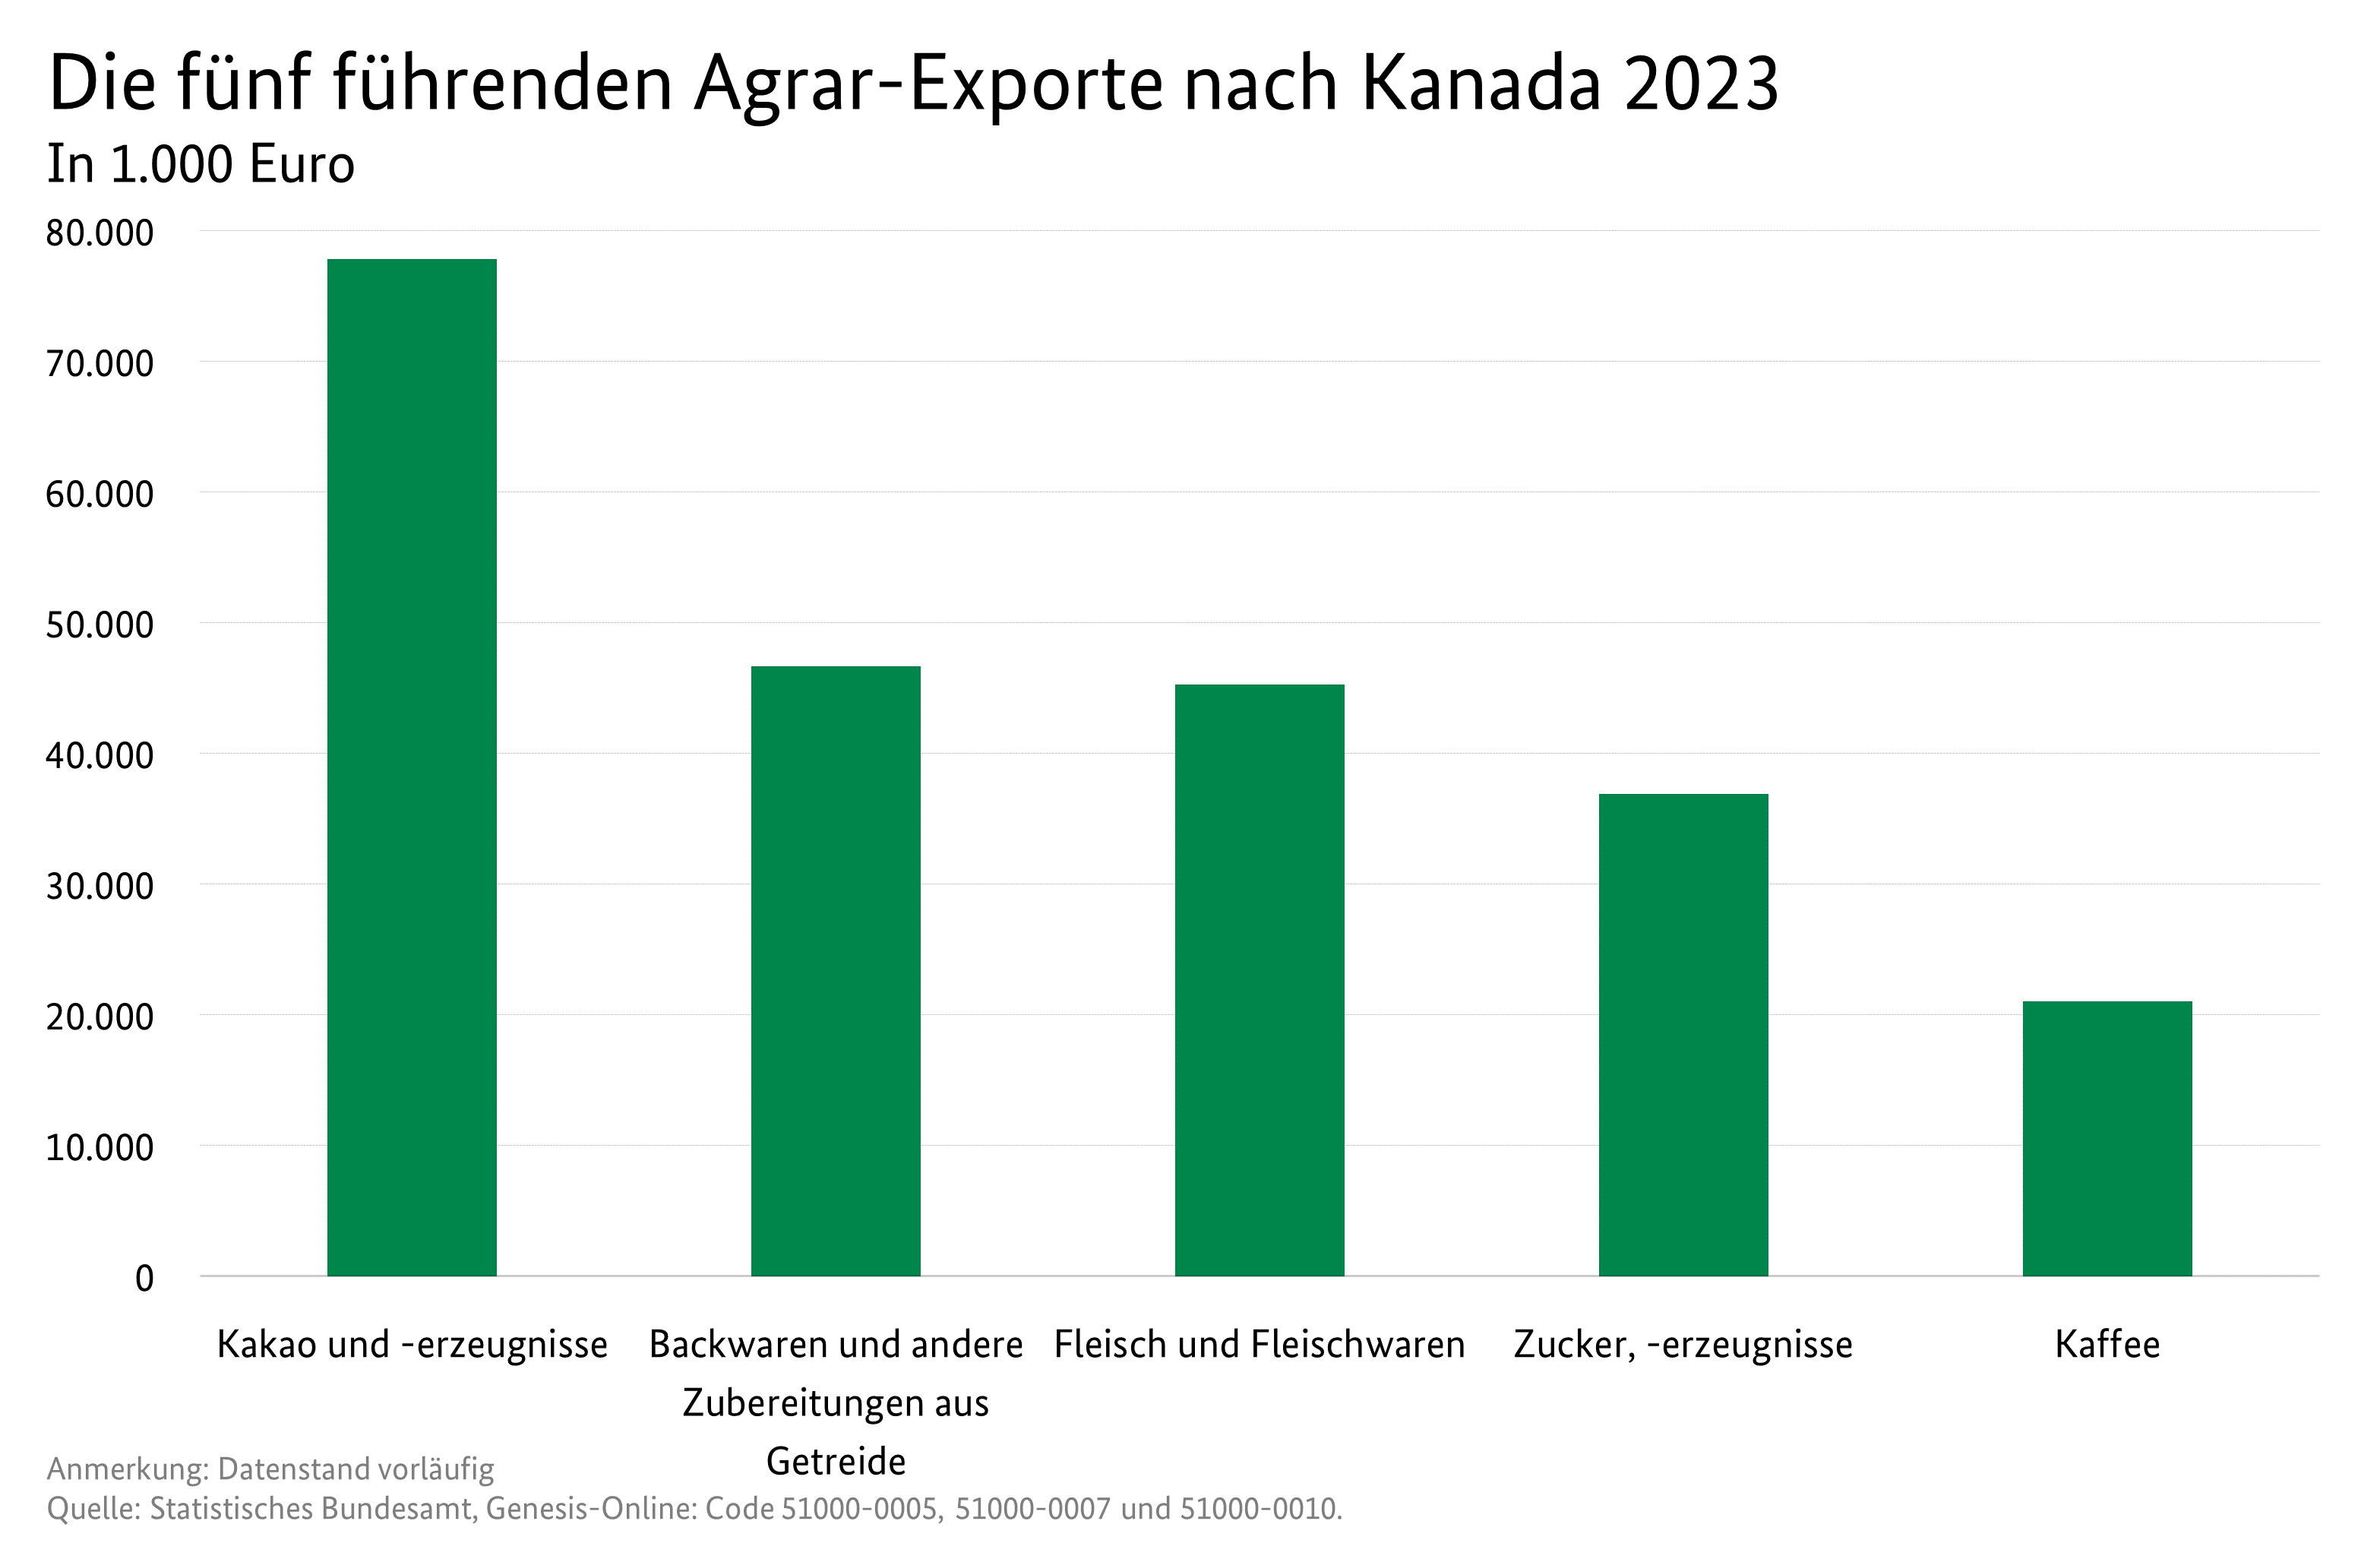 Säulendiagramm: Die fünf führenden Agrar-Exporte nach Kanda. Datenquelle: Tabelle Deutscher Außenhandel mit Kanada.